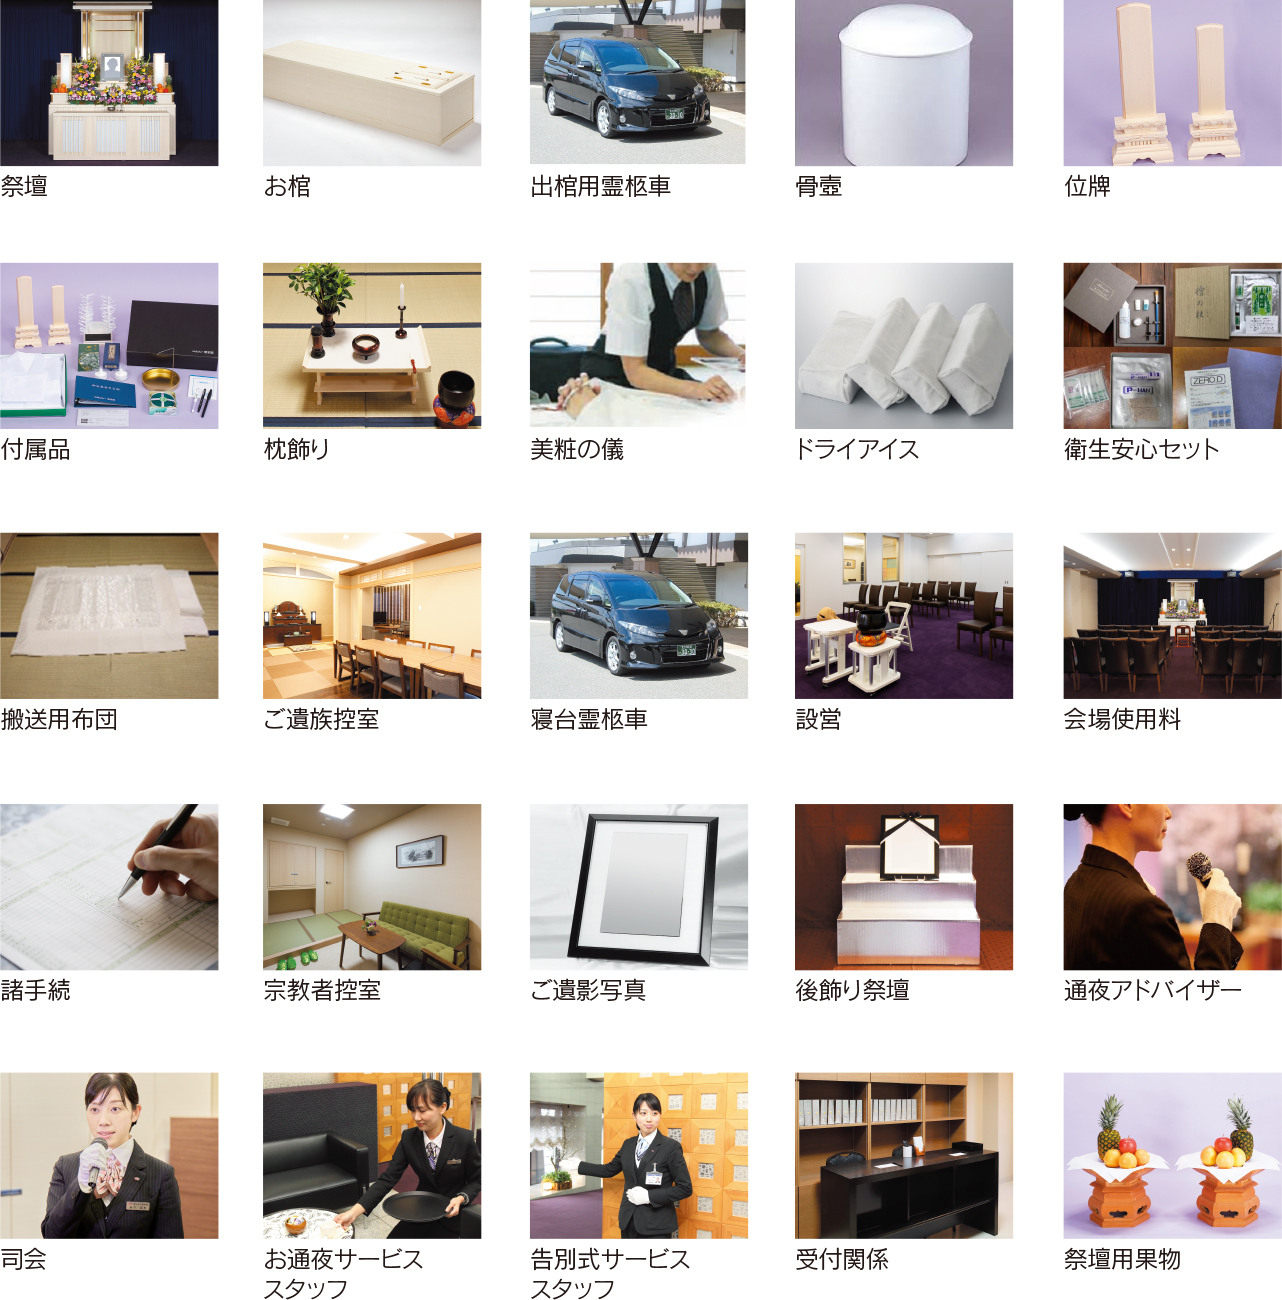 福岡、香椎、多々良、浦田近郊で葬儀、葬式、葬儀場の事ならサンレー紫雲閣 福岡 ご葬儀の内容写真